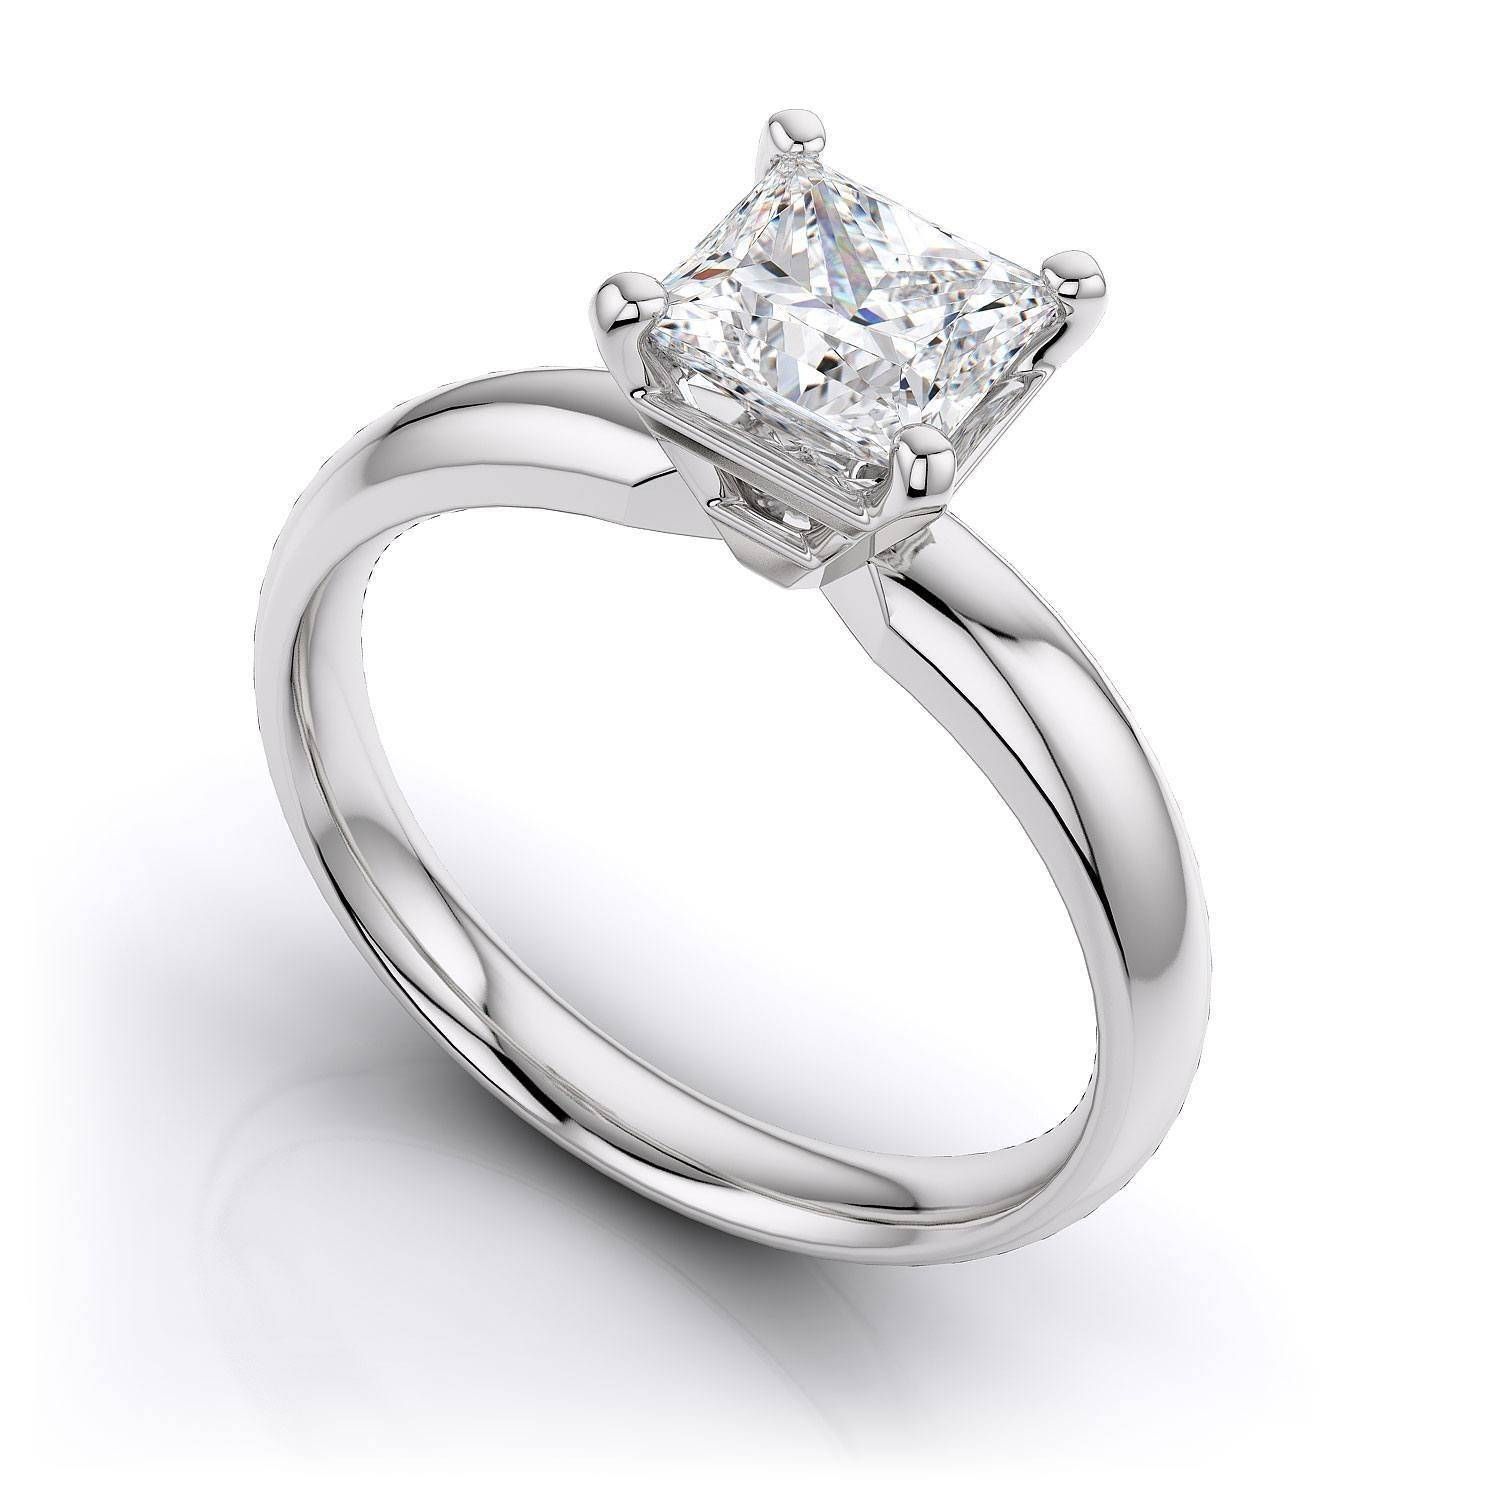 70ctw Princess Cut Gia Certified Diamond Diamond Engagement Ring In Certified Diamond Wedding Rings (View 6 of 15)